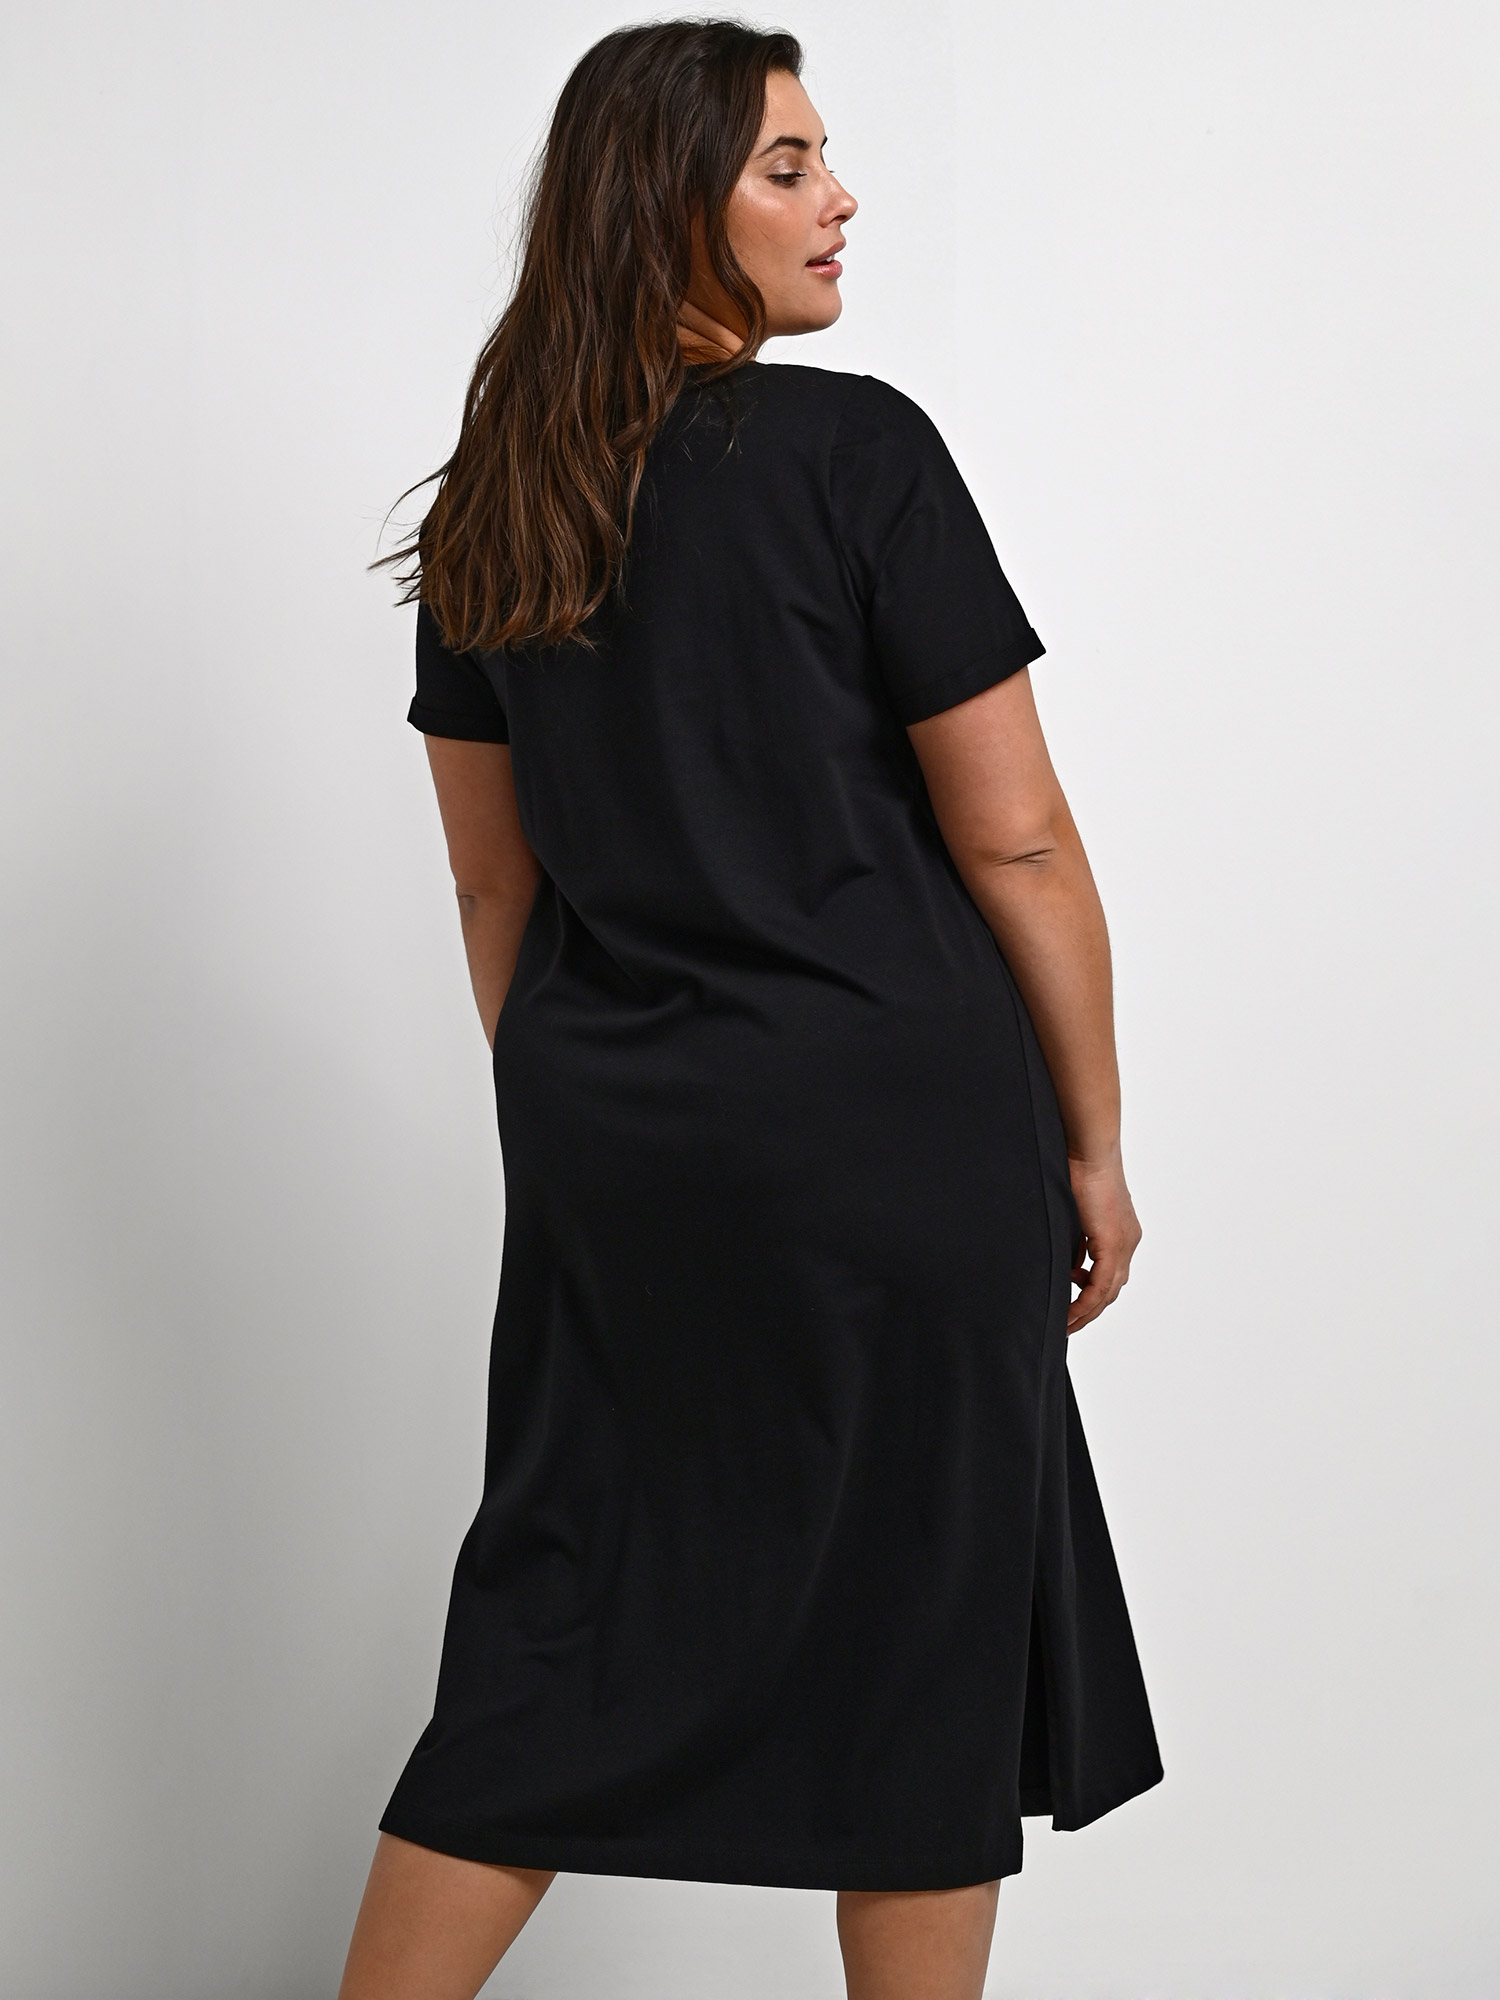 KCaline - Sort kjole i bomulds jersey fra Kaffe Curve